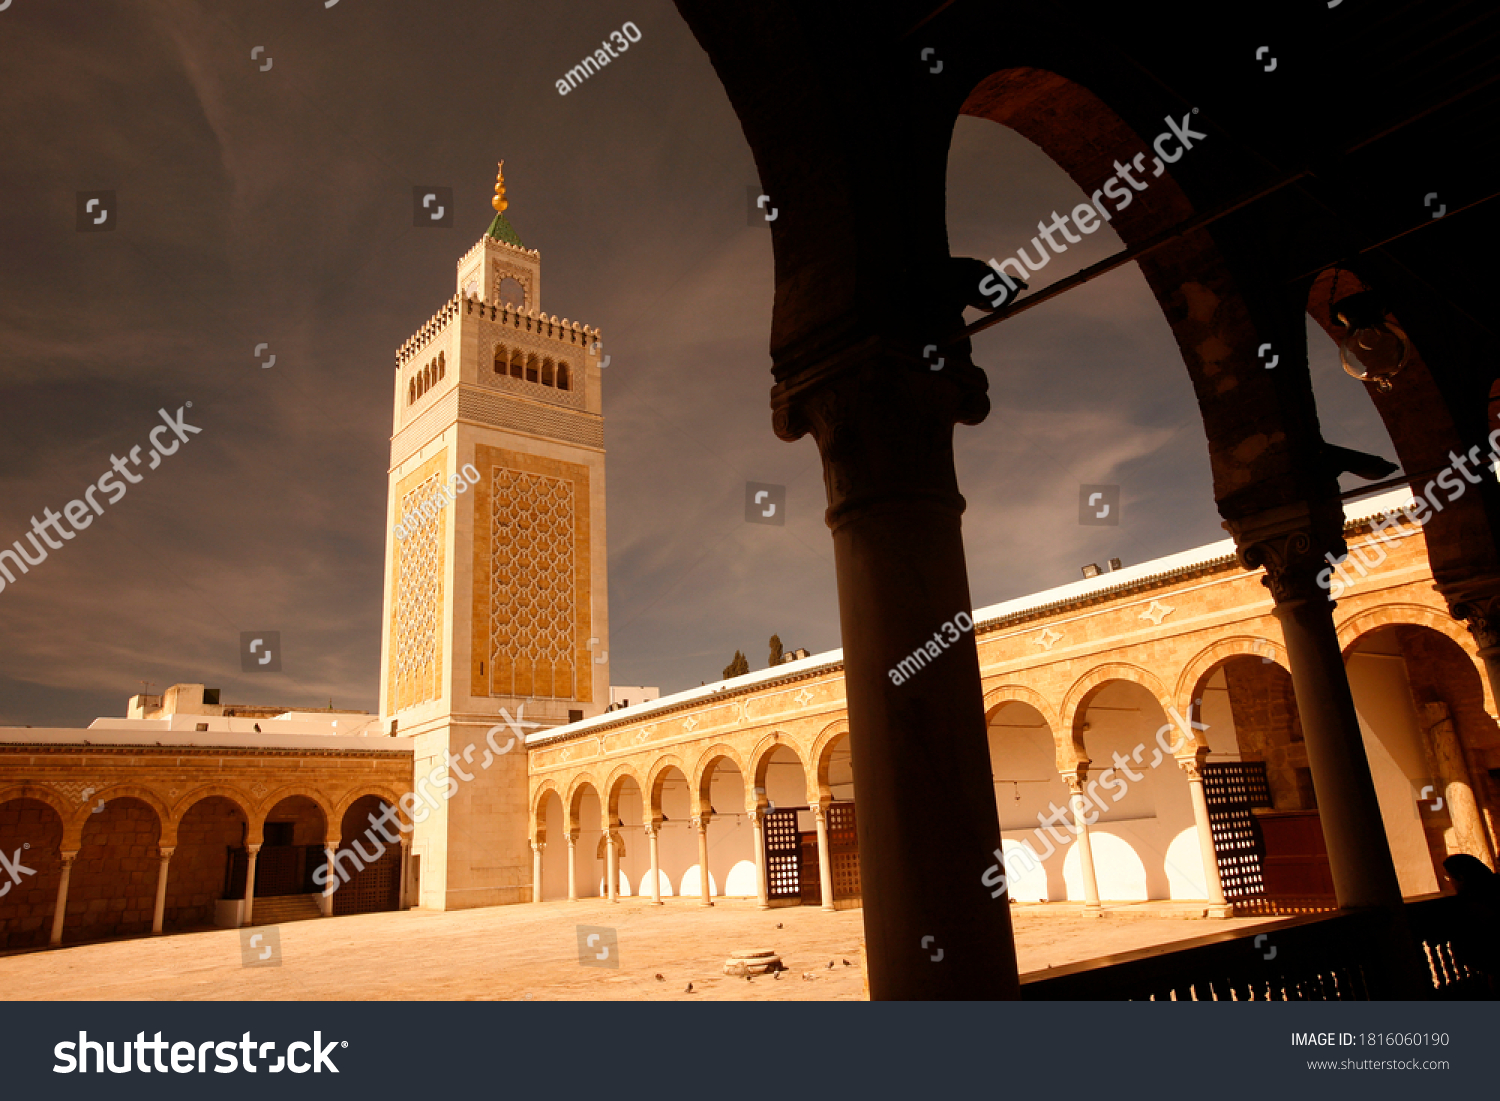 Ez Zitouna Al Zaytuna Mosque Medina Stock Photo Shutterstock